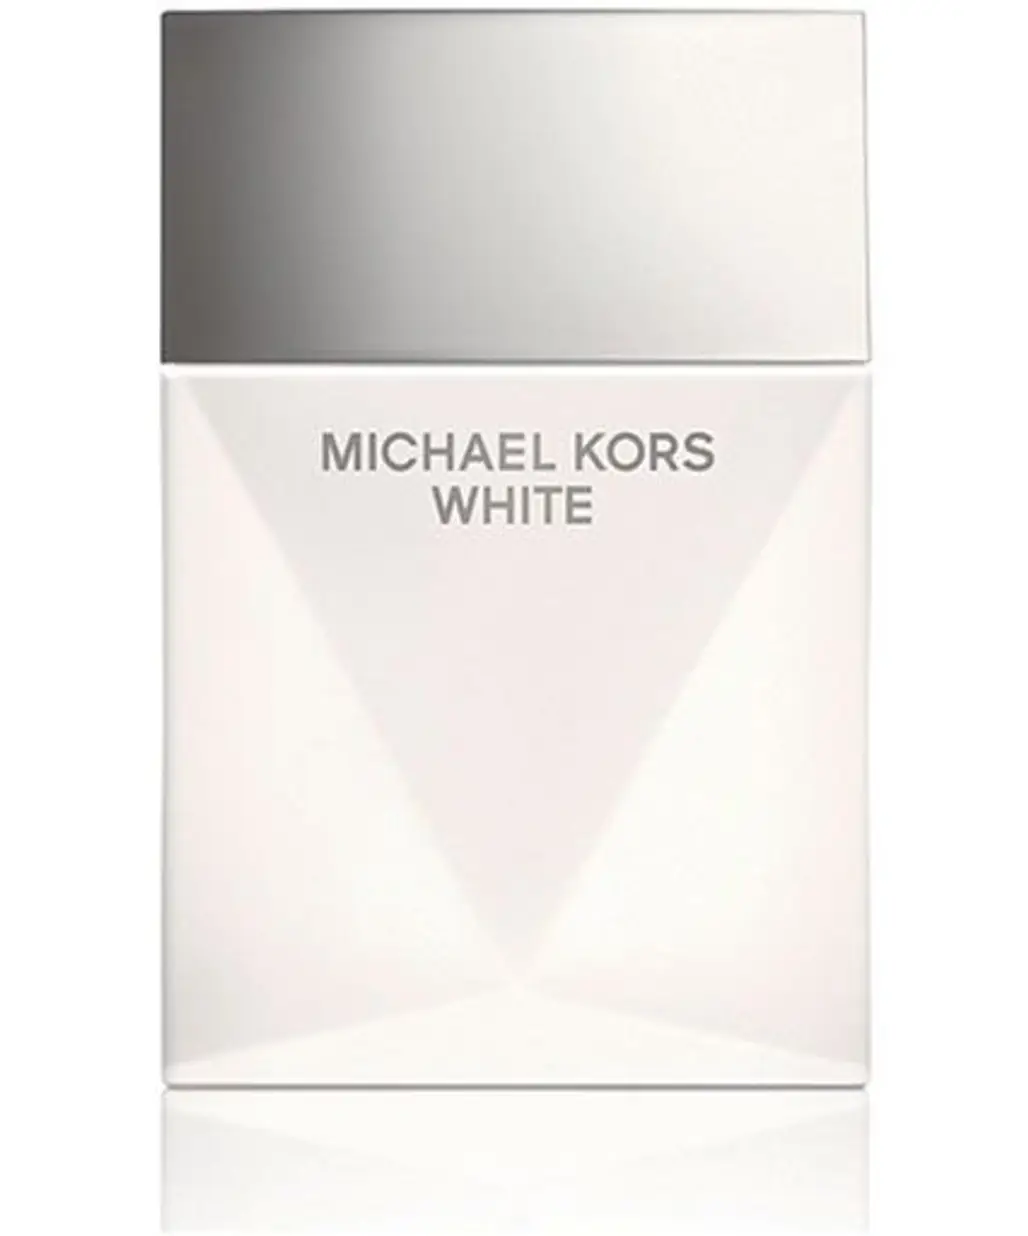 White Eau De Parfum Spray by Michael Kors